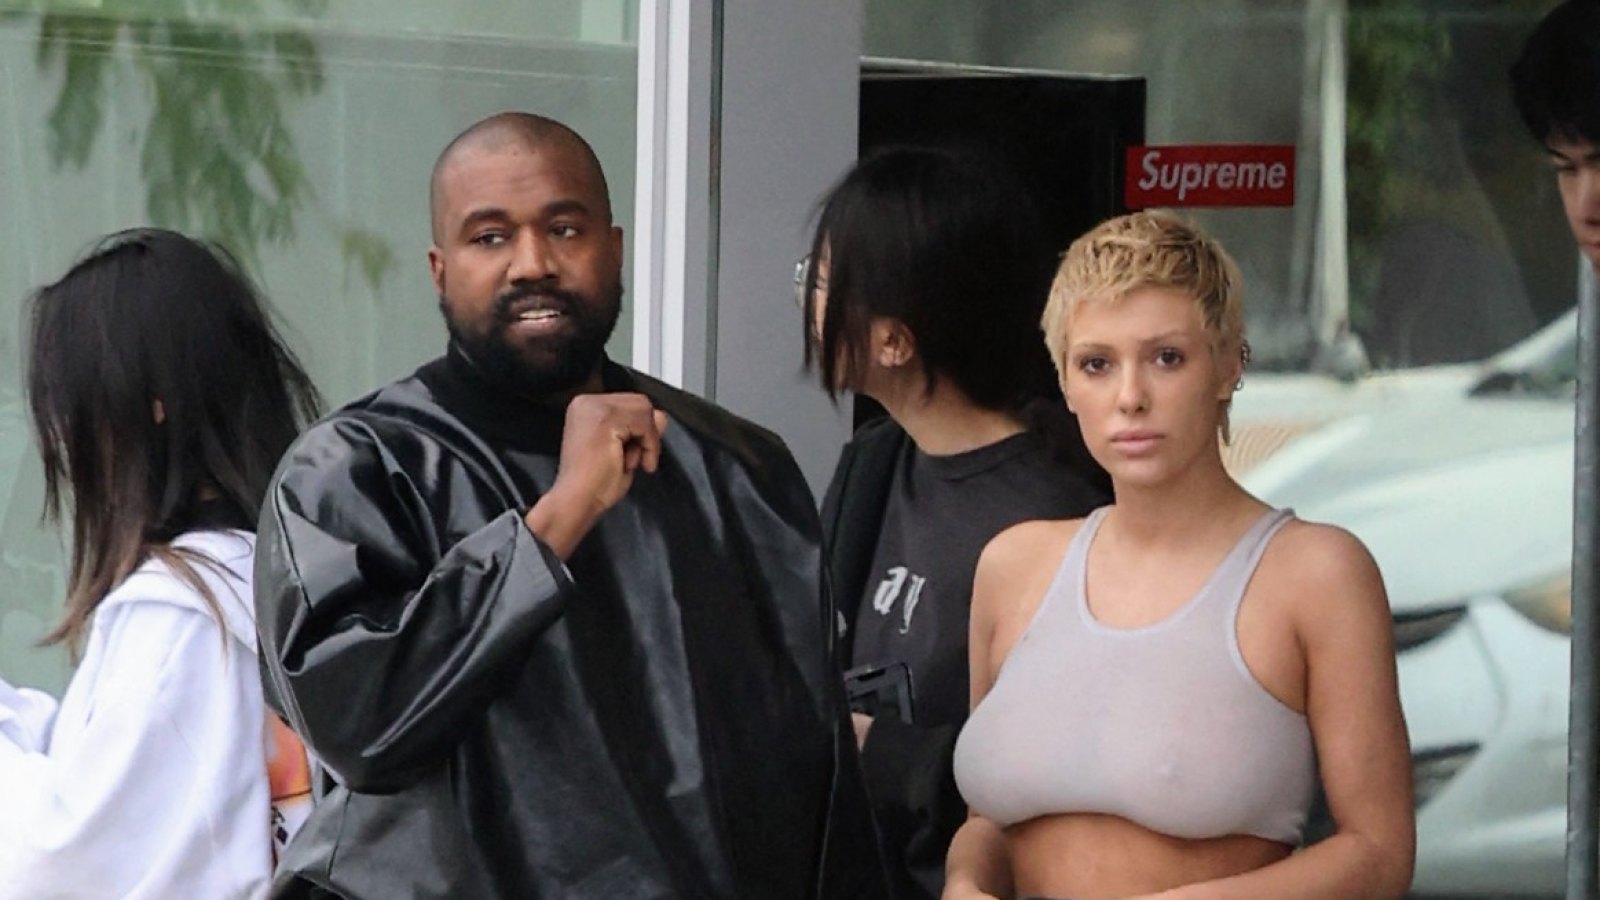 Inside Kanye West's 'Honeymoon Phase' With Partner Bianca Censori